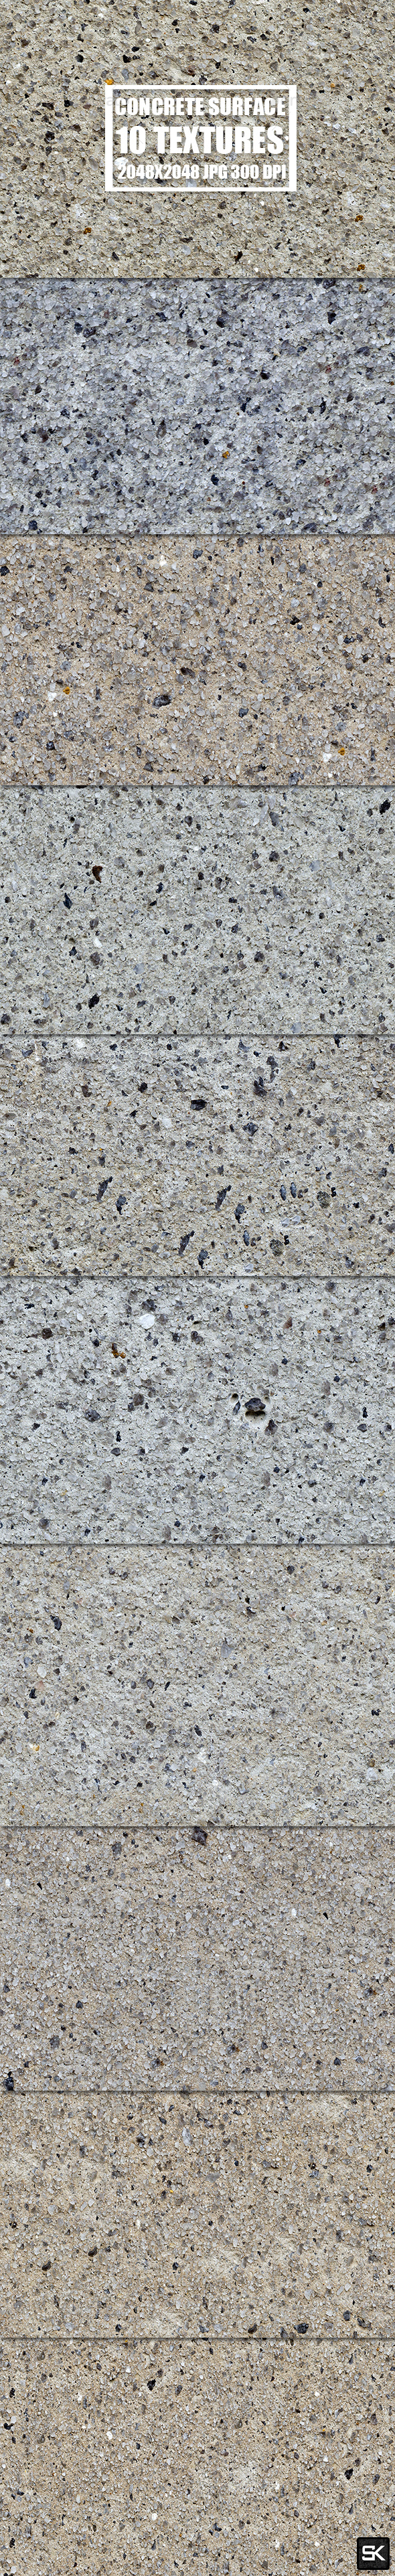 Tileable Concrete Surface - 3Docean 15528268